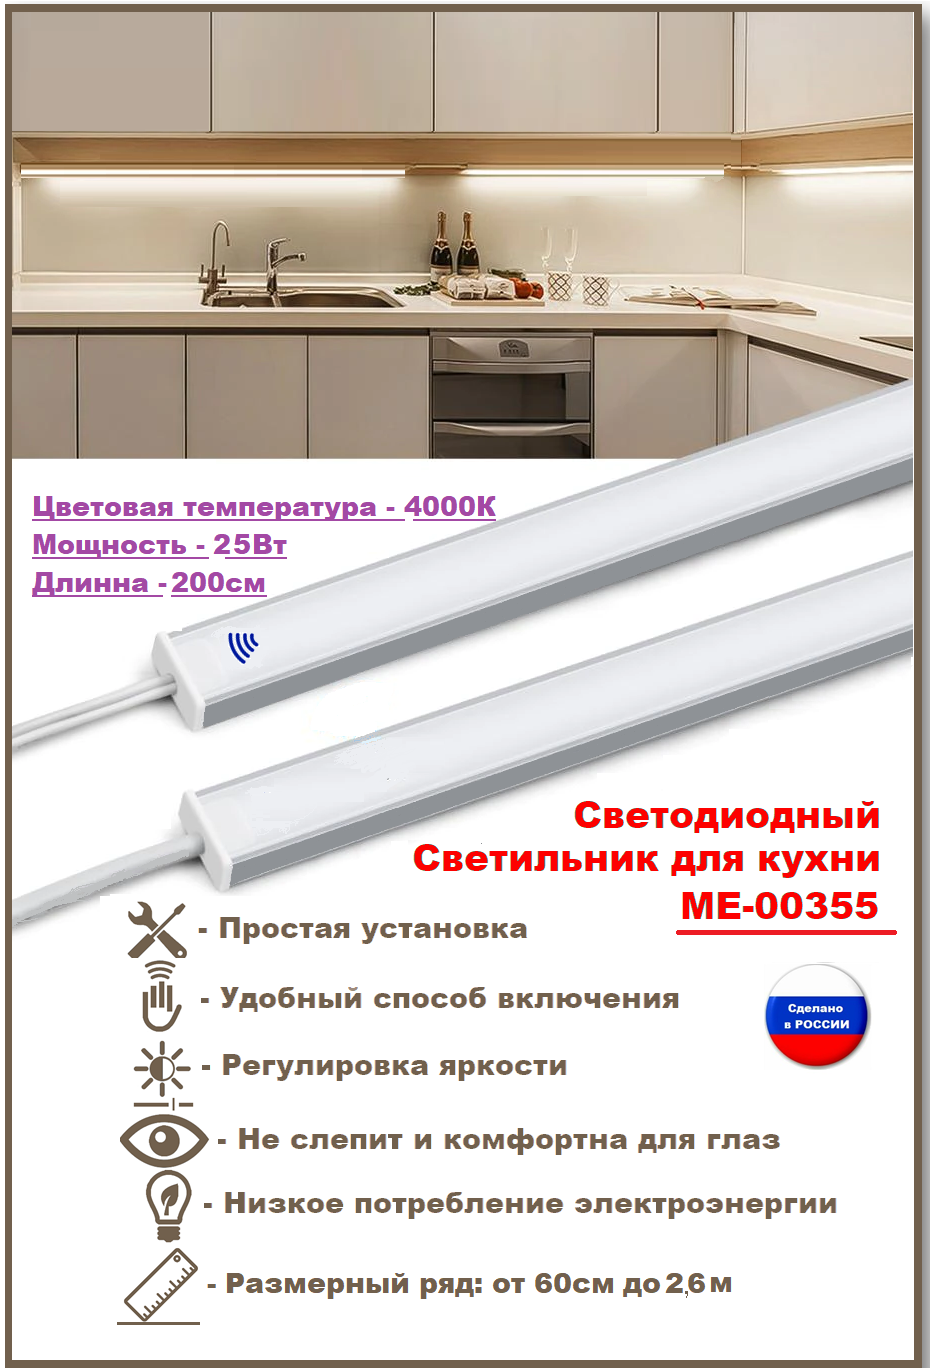 Светодиодный светильник для кухни под навесные шкафы, с включателем от взмаха руки 200см (из 2х частей 100см+100см), 4000К-дневной белый.